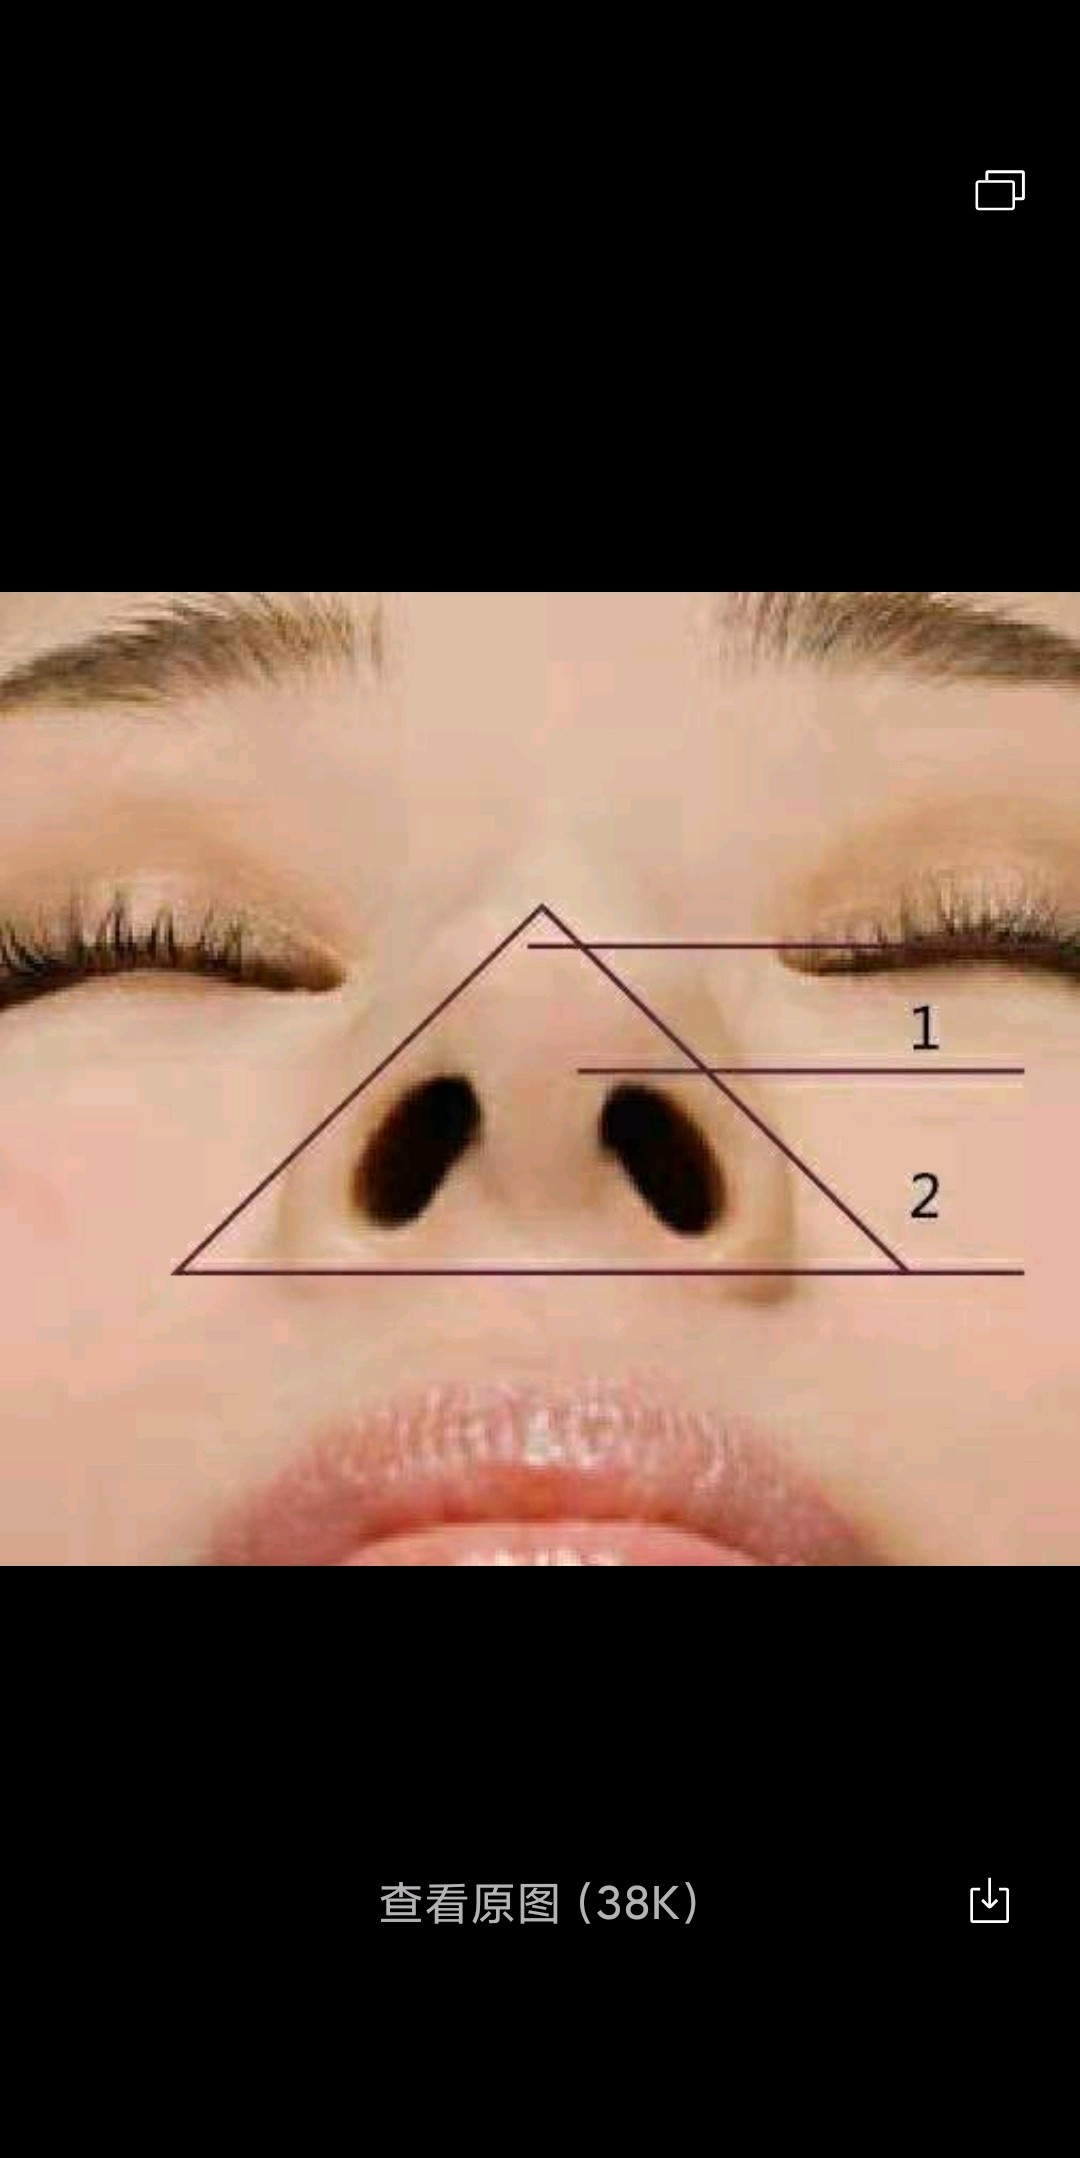 你仰头整个鼻小柱和鼻基底形状类似于等边三角形,鼻孔呈现水滴状